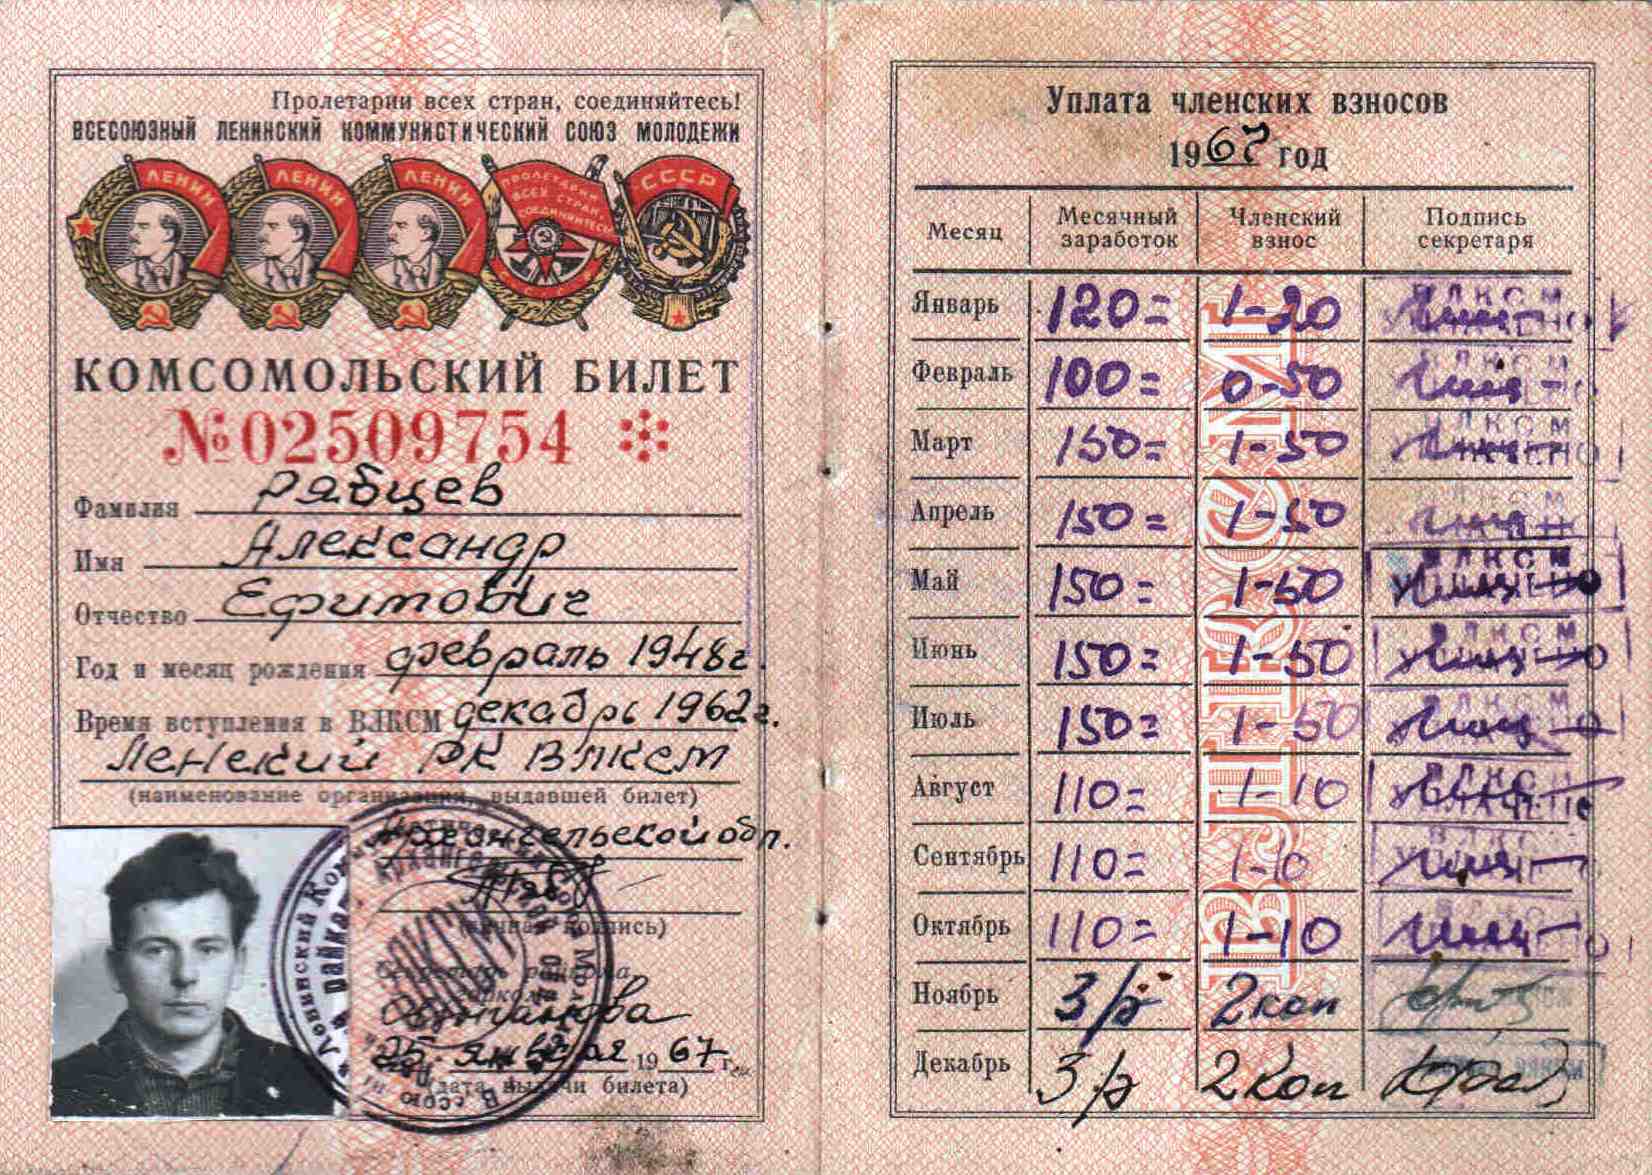 2. Комсомольский билет